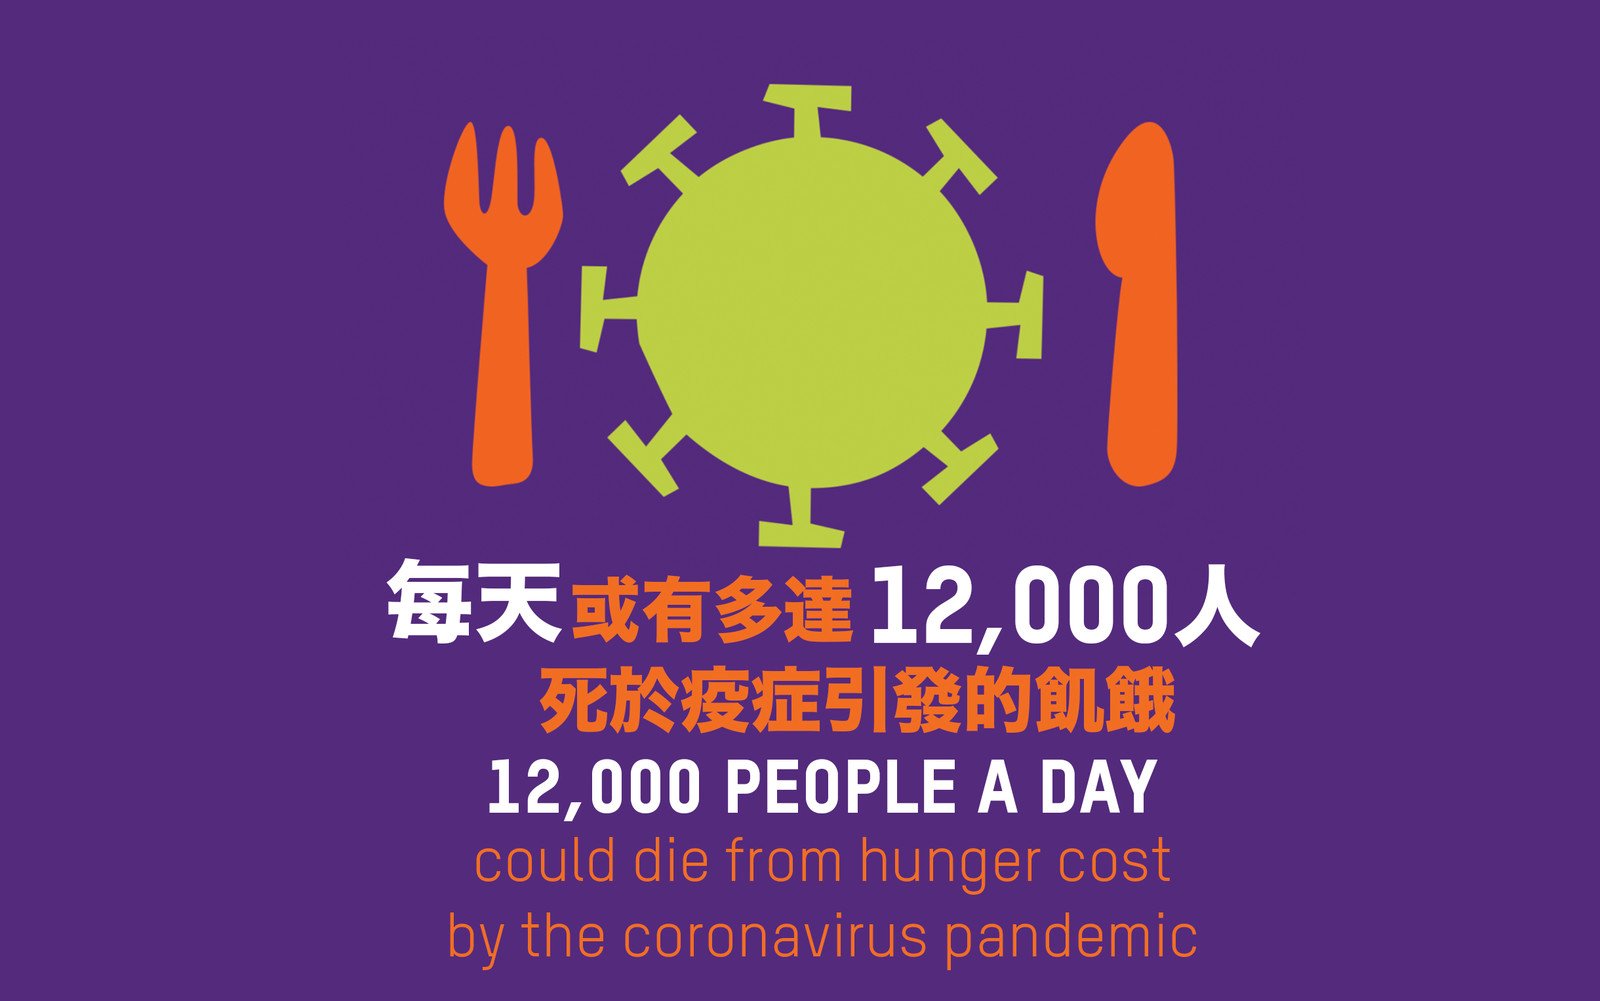 樂施會警告︰到今年底，全球每日或有多達12,000人因新冠肺炎而餓死，比遭病毒奪命的人數更多